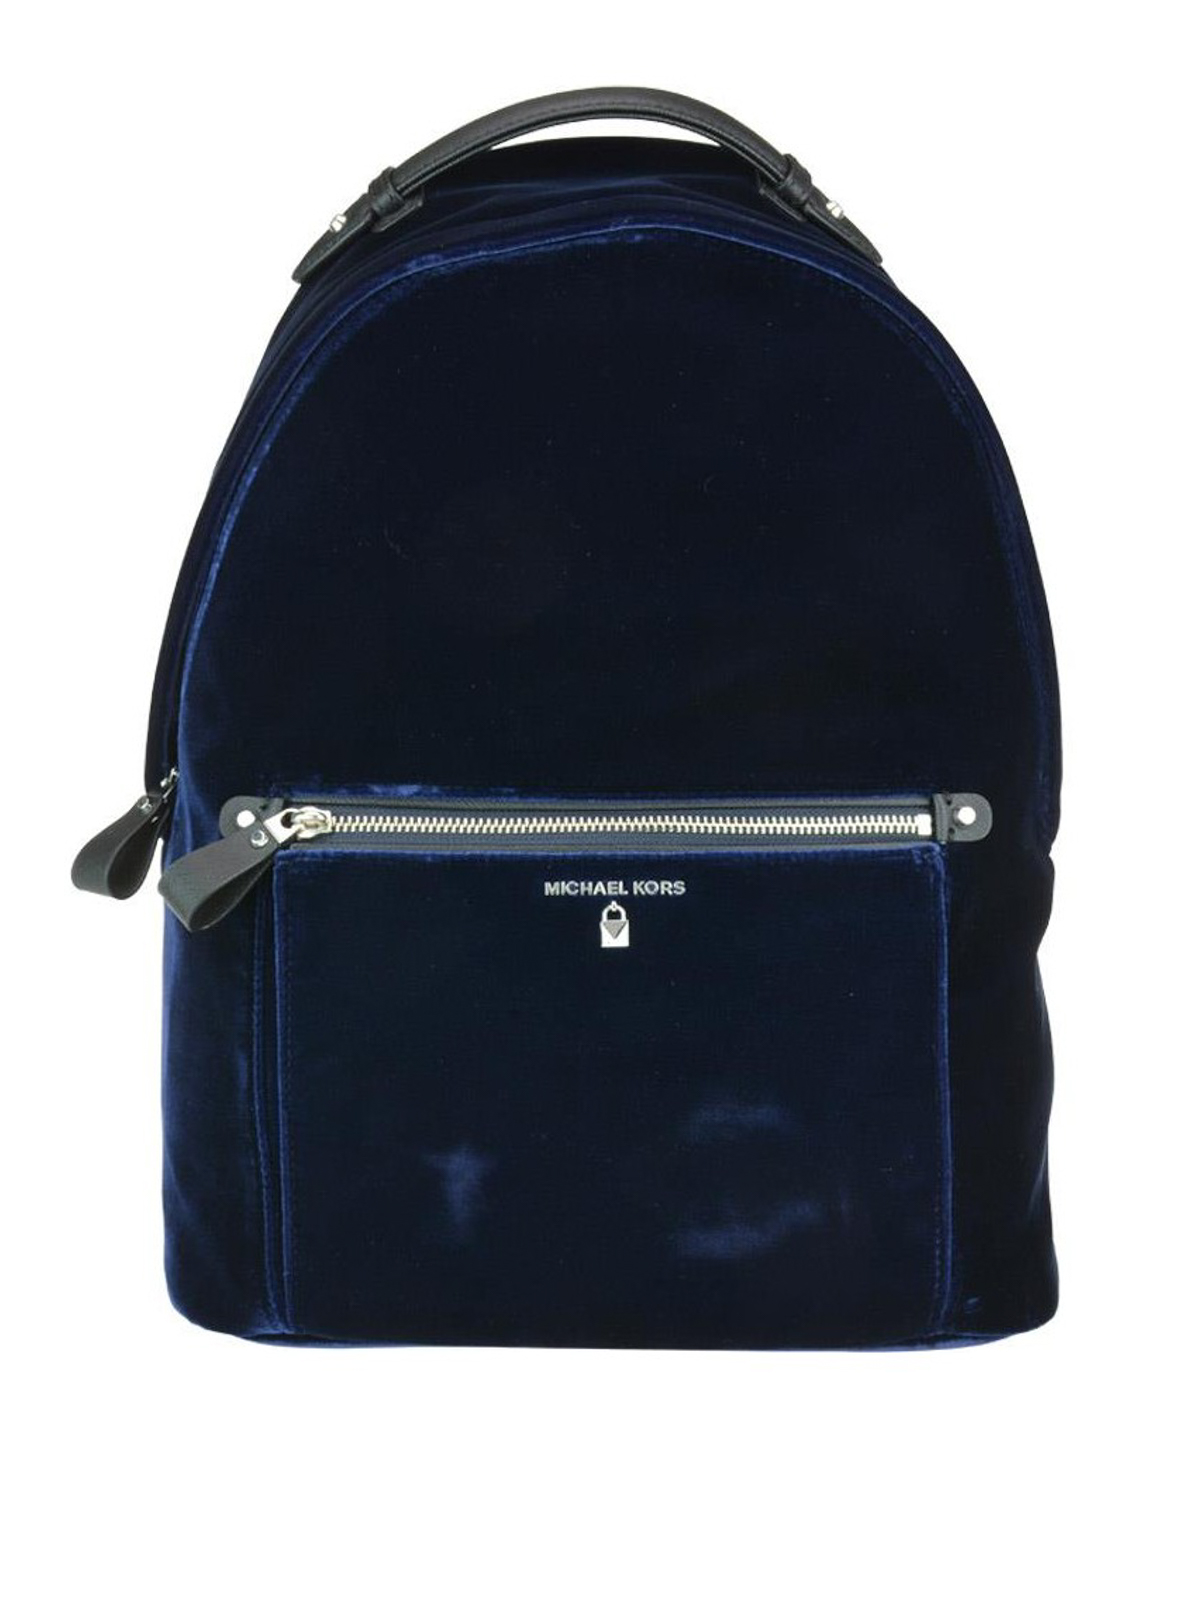 Backpacks Michael Kors - Kelsey blue velvet large backpack -